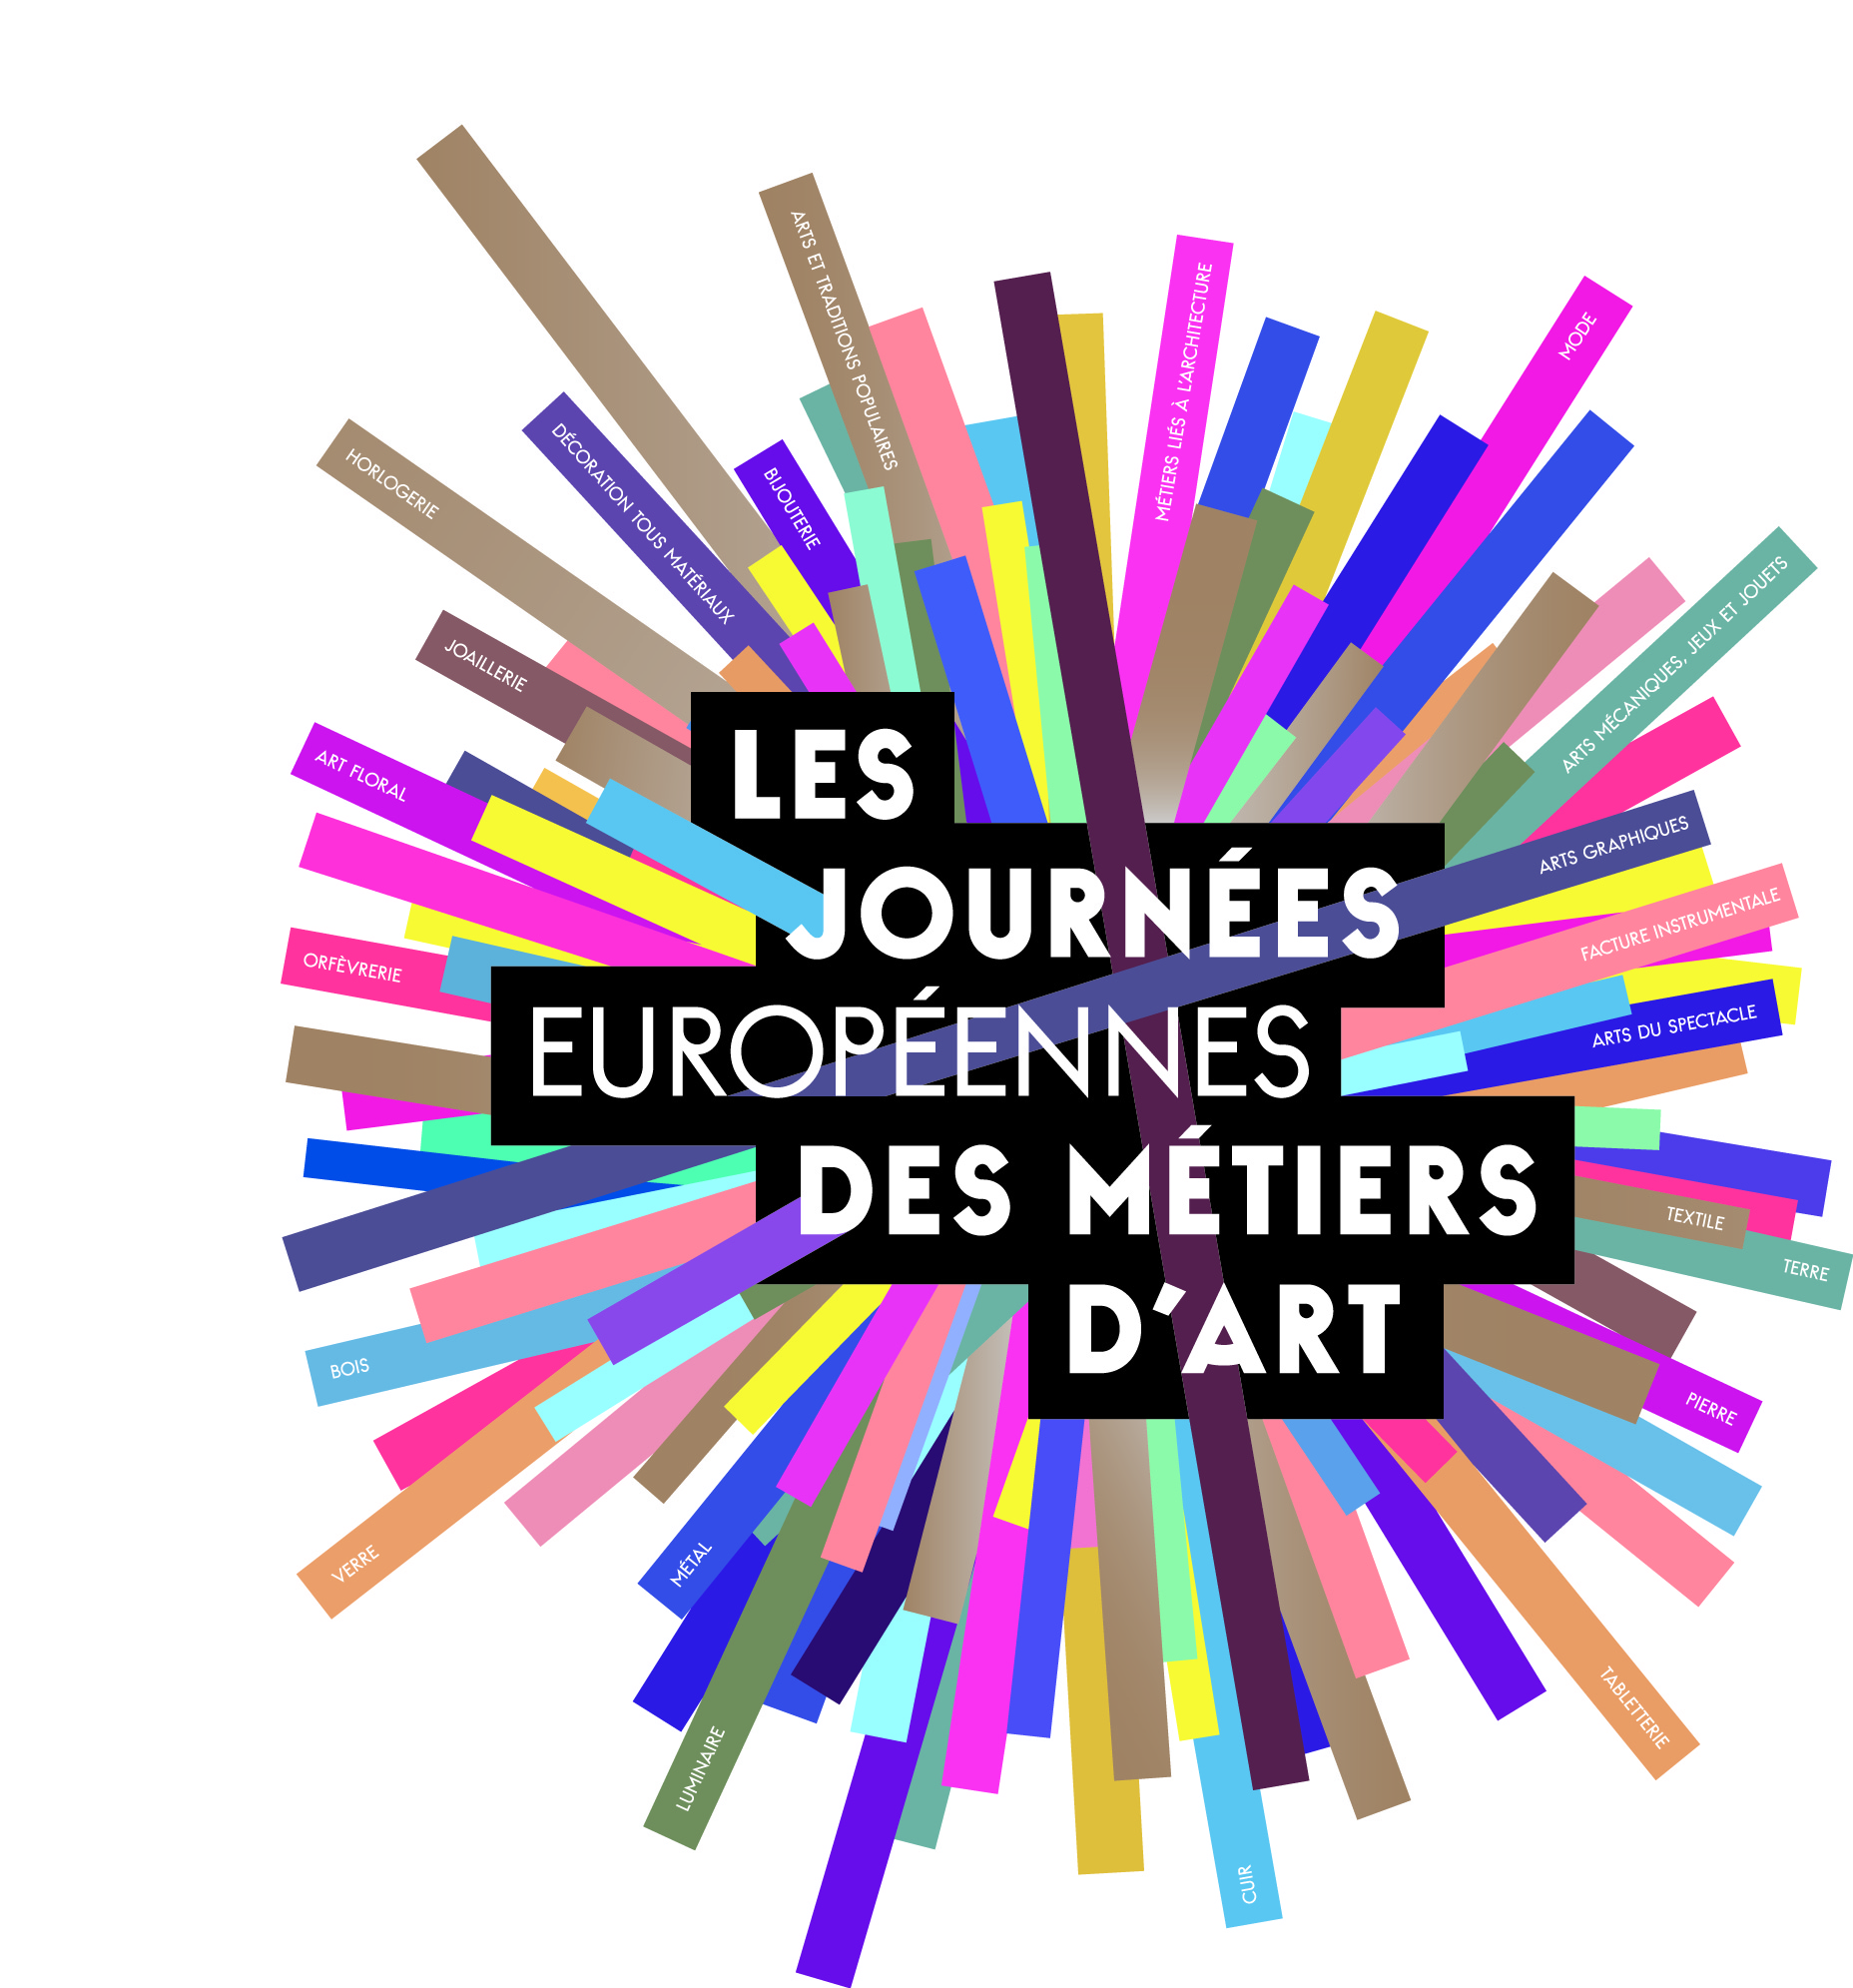 Journées Européennes des Métiers d'Art 2016 avec La Fabrique made in Bagnolet